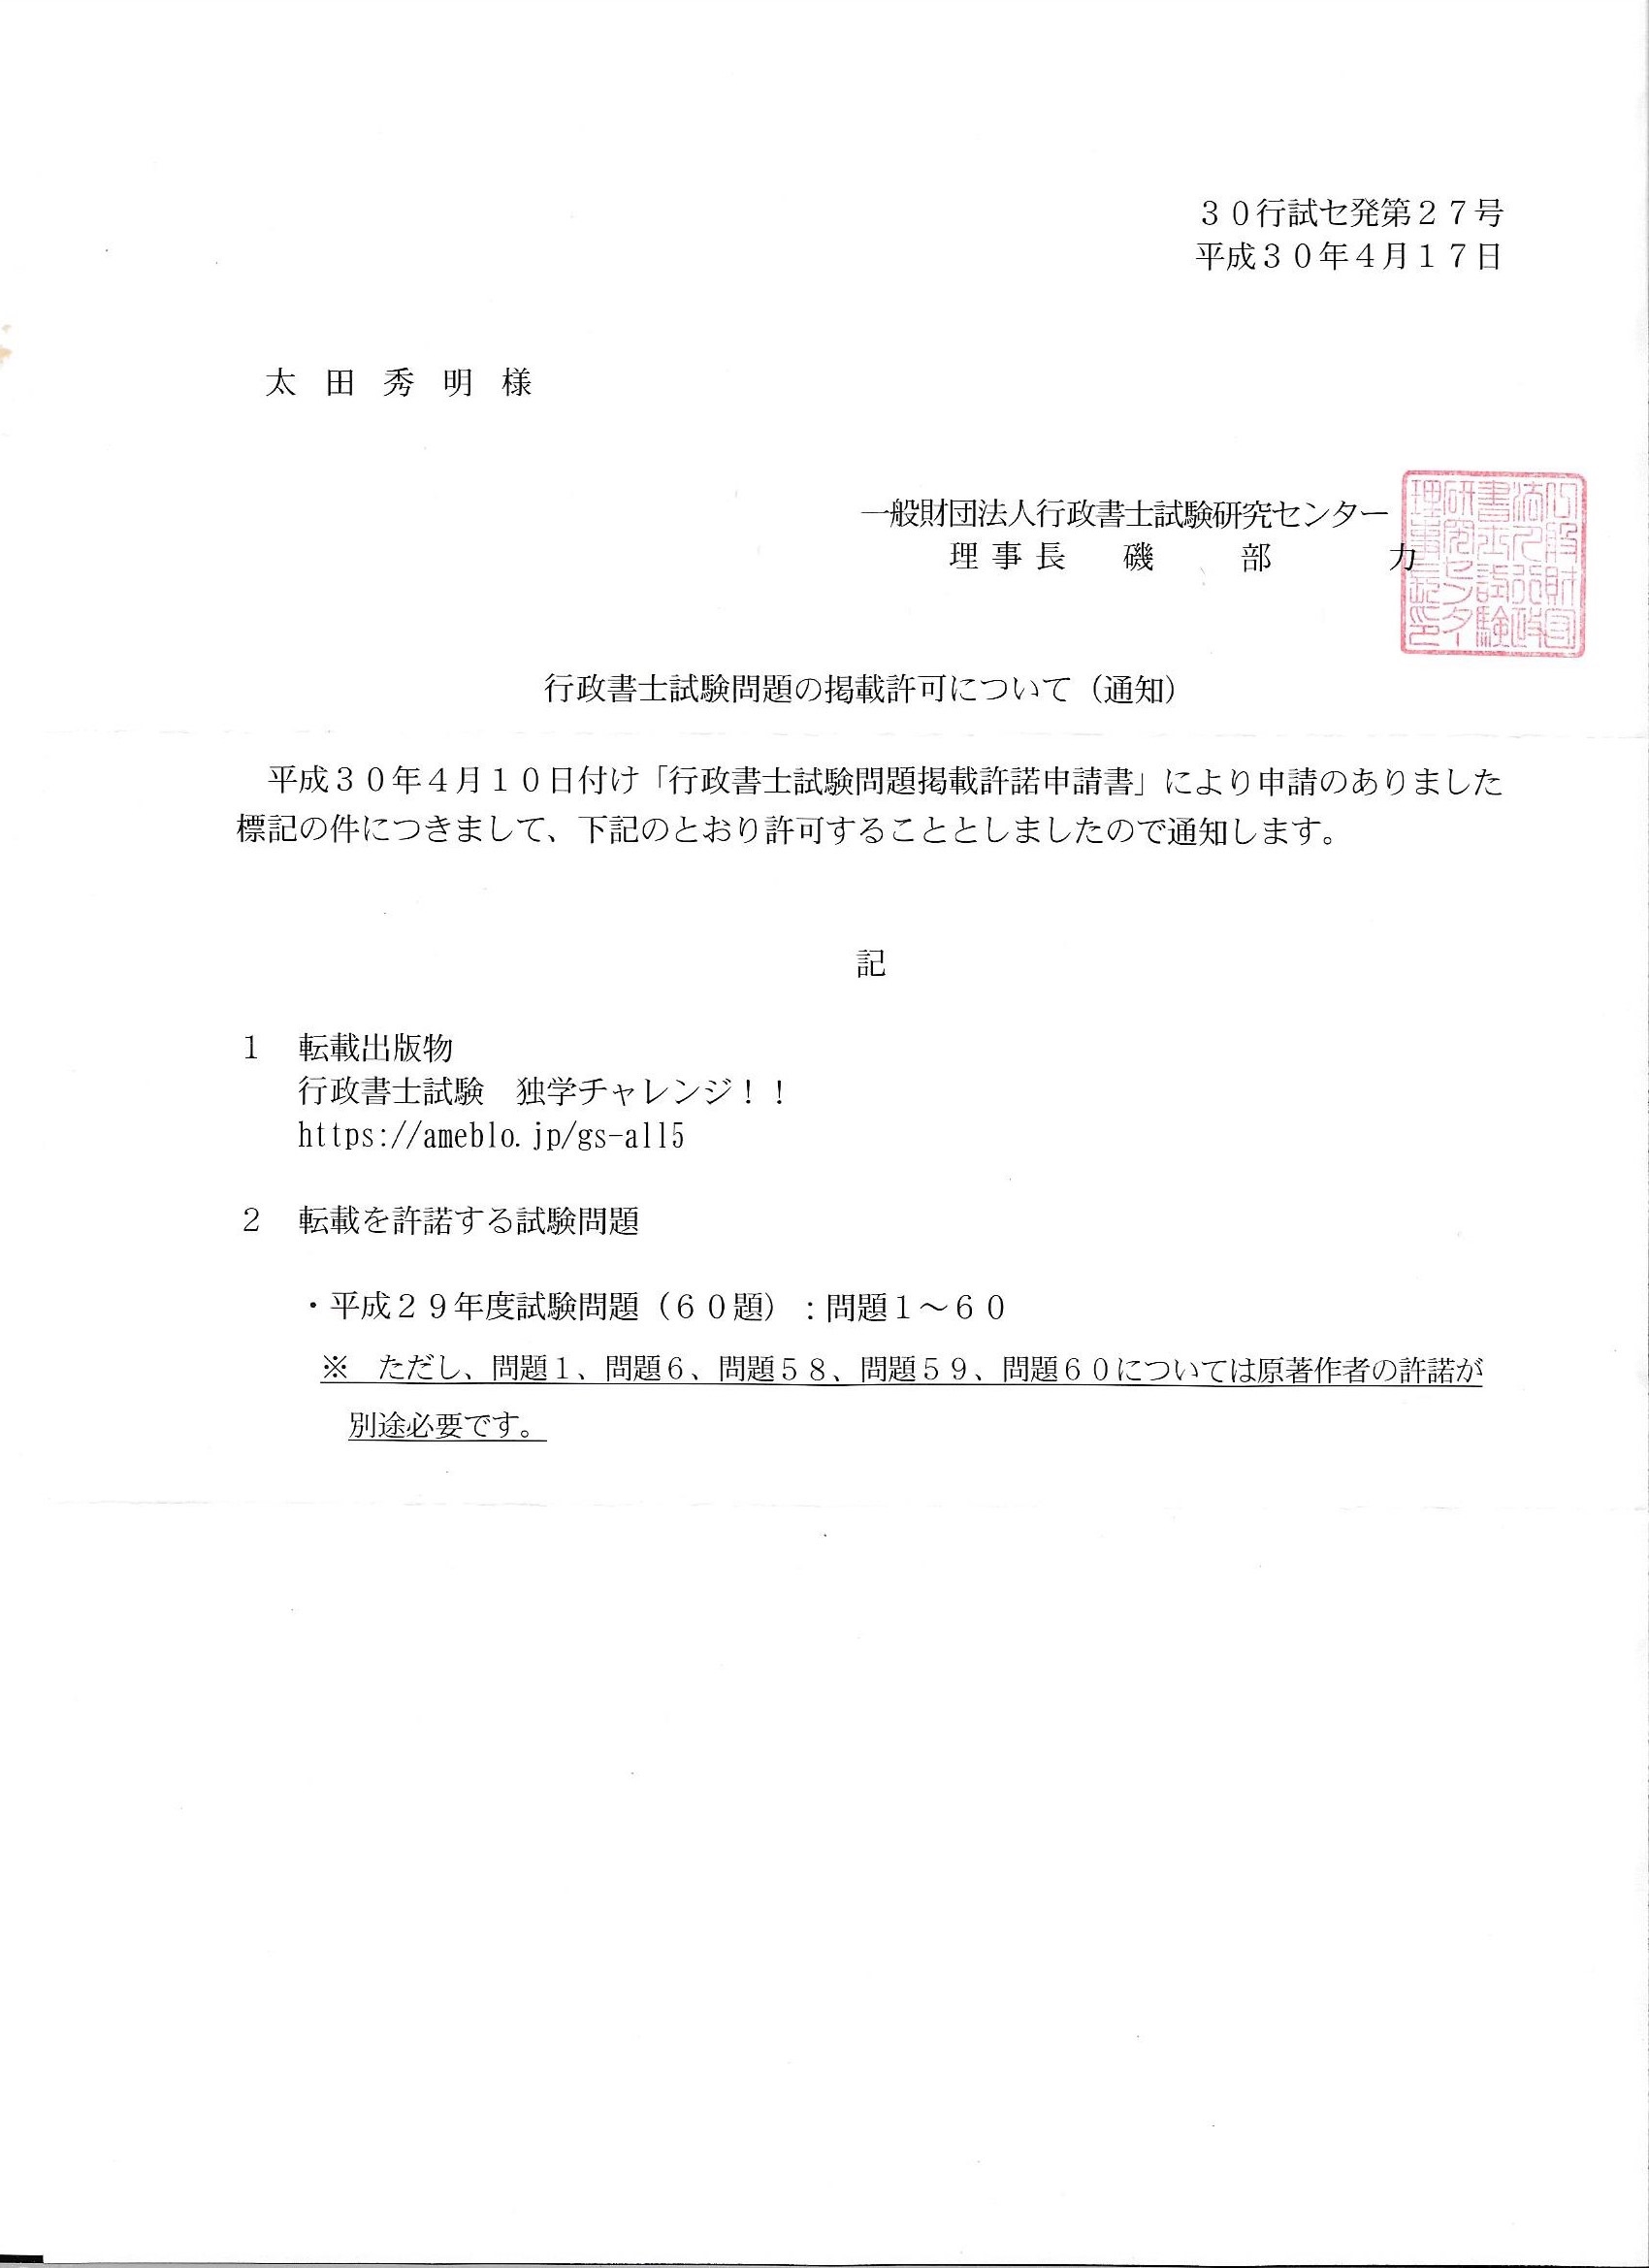 アメブロのブログ用に試験問題の追加許可を頂きました 仙台での許可 届出のご依頼は 行政書士 太田事務所へ